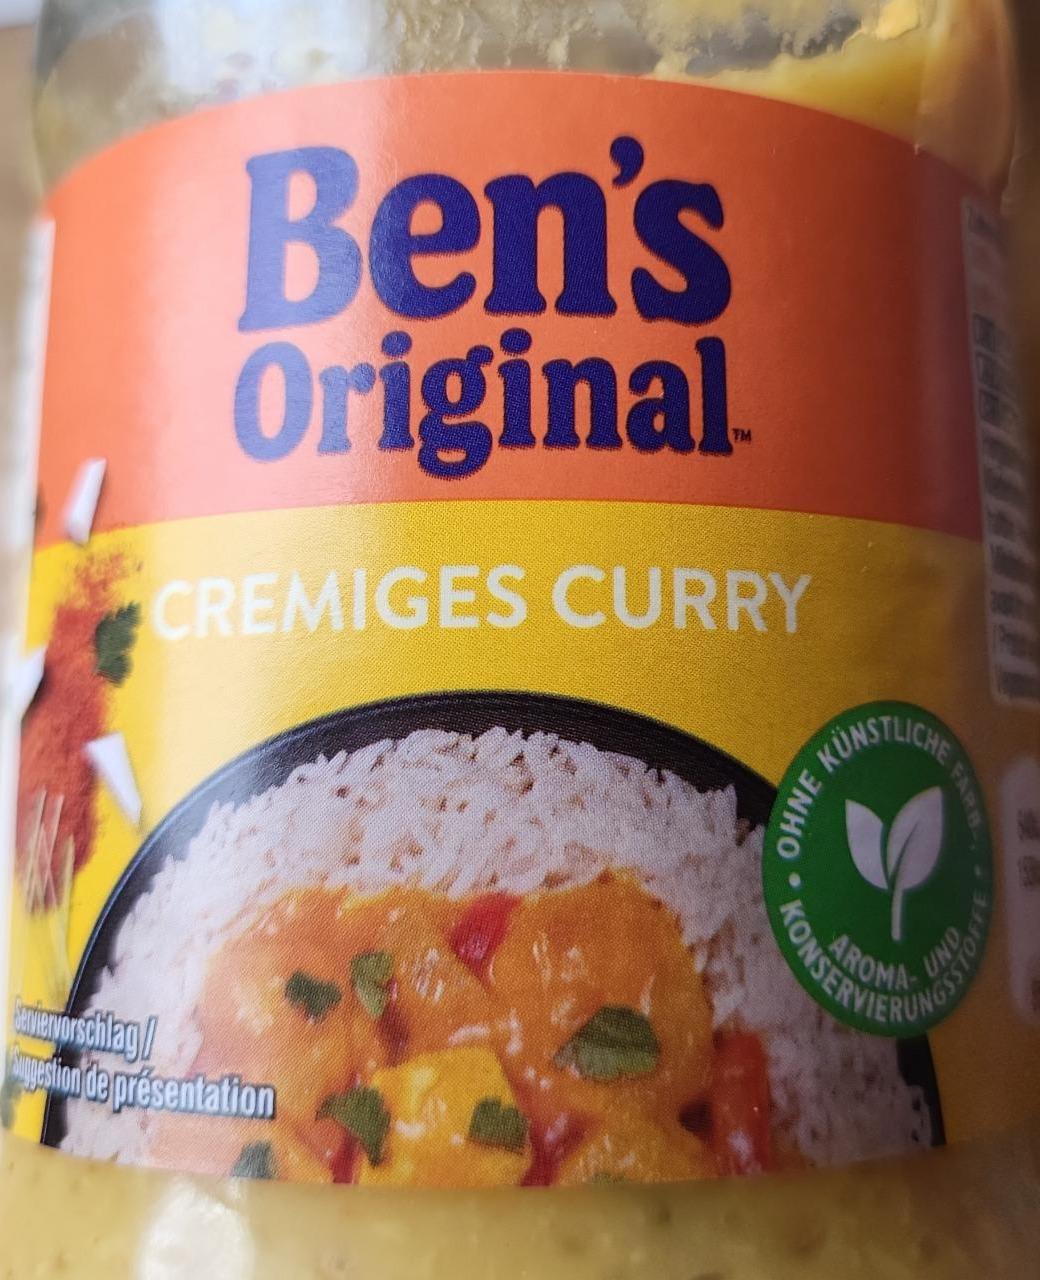 Zdjęcia - Cremiges curry Ben's Original